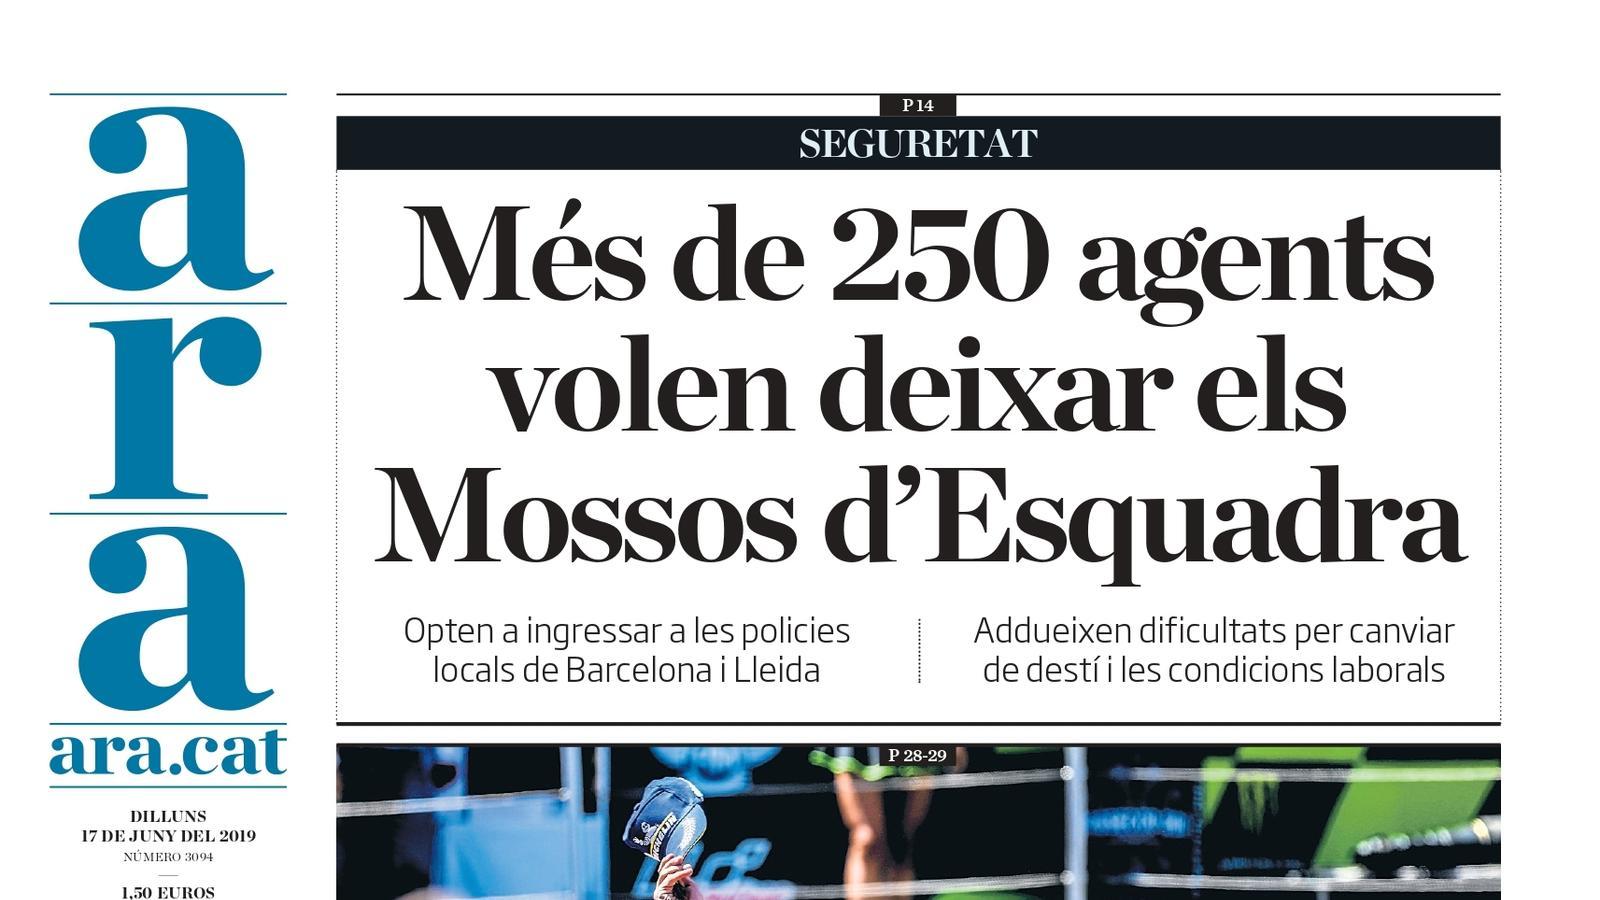 "Més de 250 agents volen deixar els Mossos d'Esquadra", la portada de l'ARA